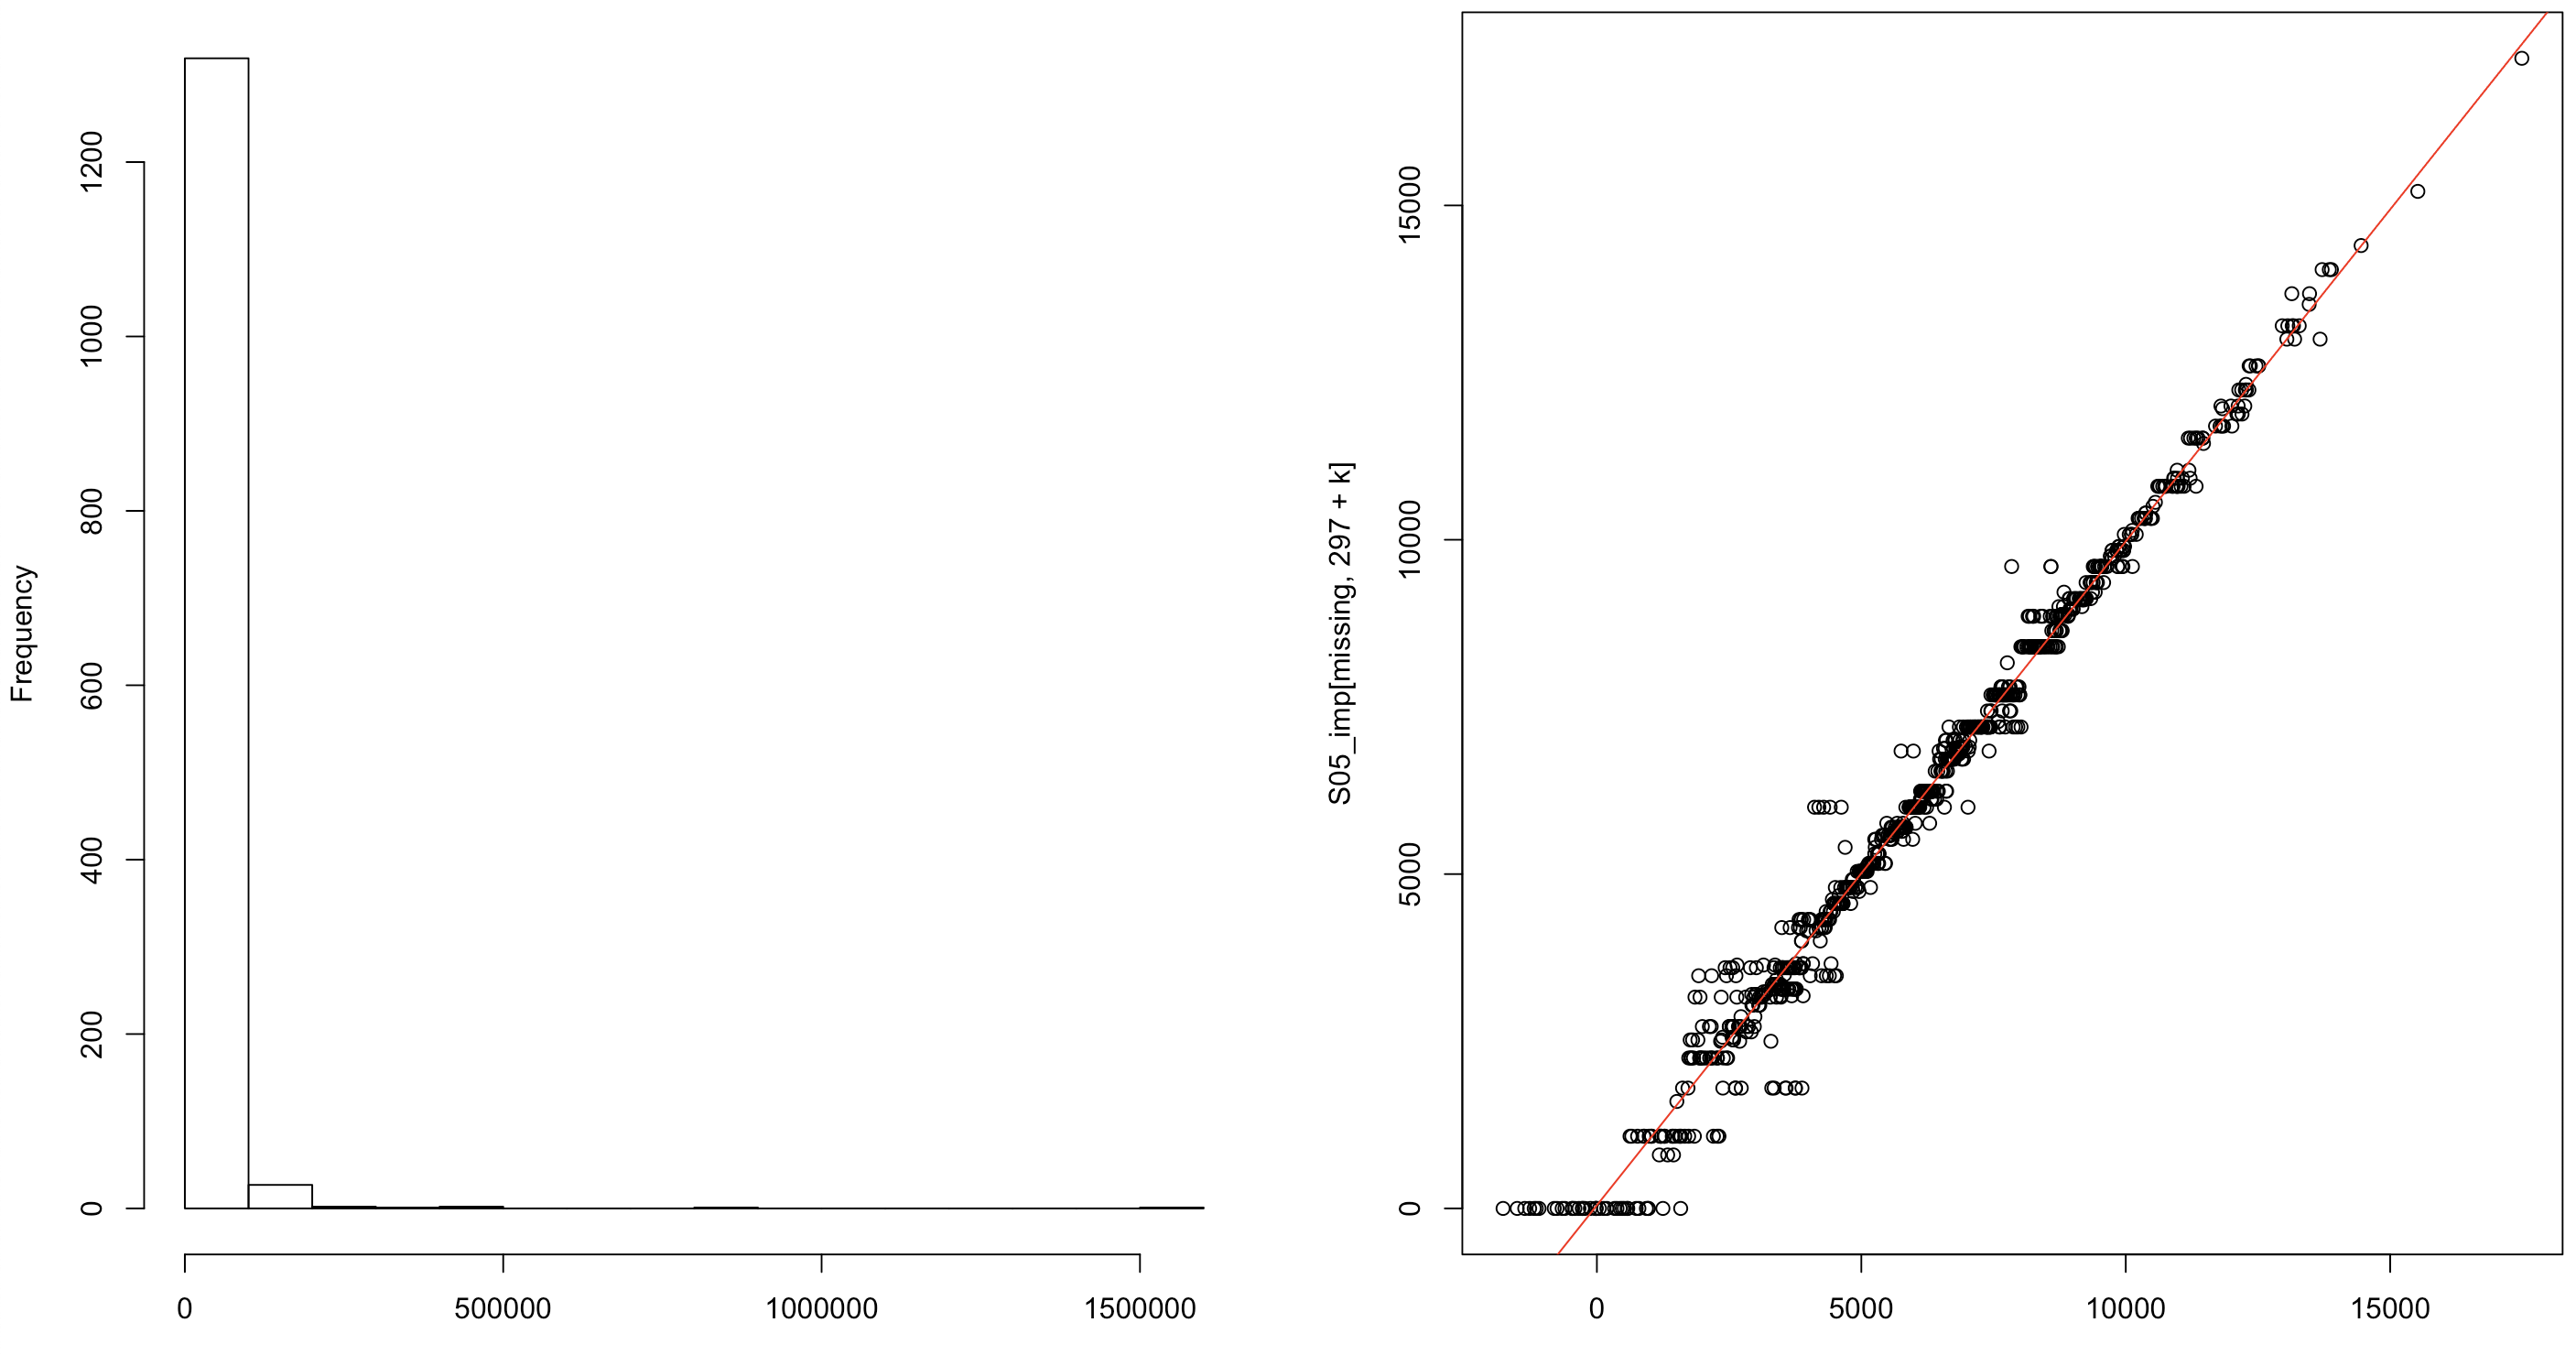 Distribución de los gastos imputados sobre el salmón (izquierda) y relación entre los valores predichos e imputados para los hogares con valores faltantes en el gasto (derecha).